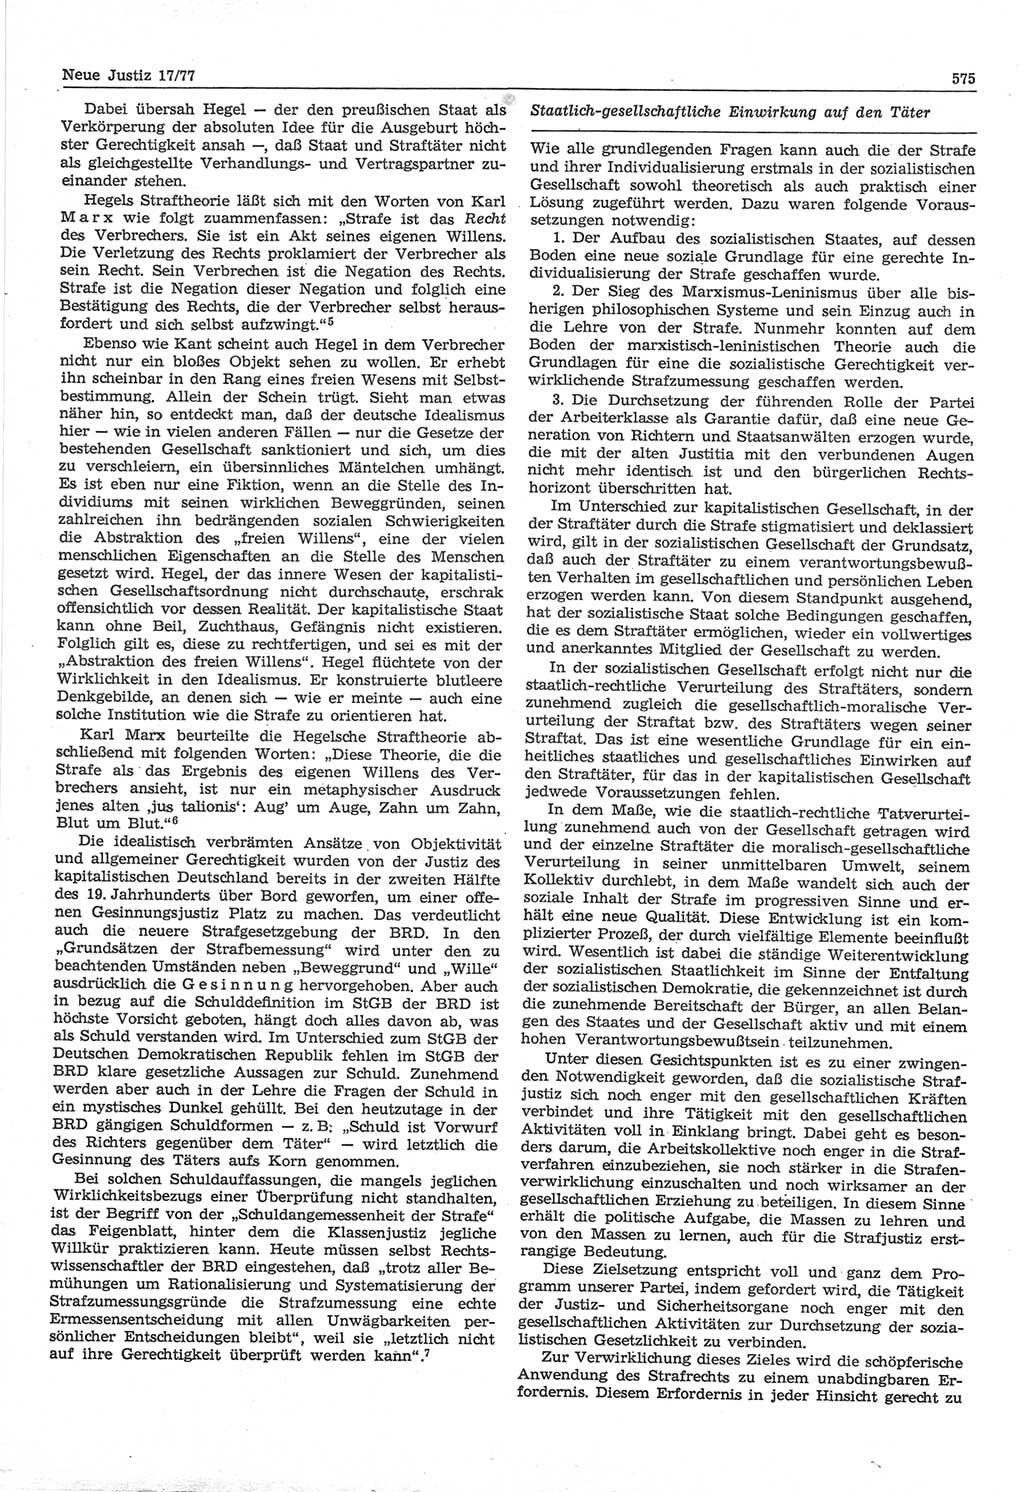 Neue Justiz (NJ), Zeitschrift für Recht und Rechtswissenschaft-Zeitschrift, sozialistisches Recht und Gesetzlichkeit, 31. Jahrgang 1977, Seite 575 (NJ DDR 1977, S. 575)